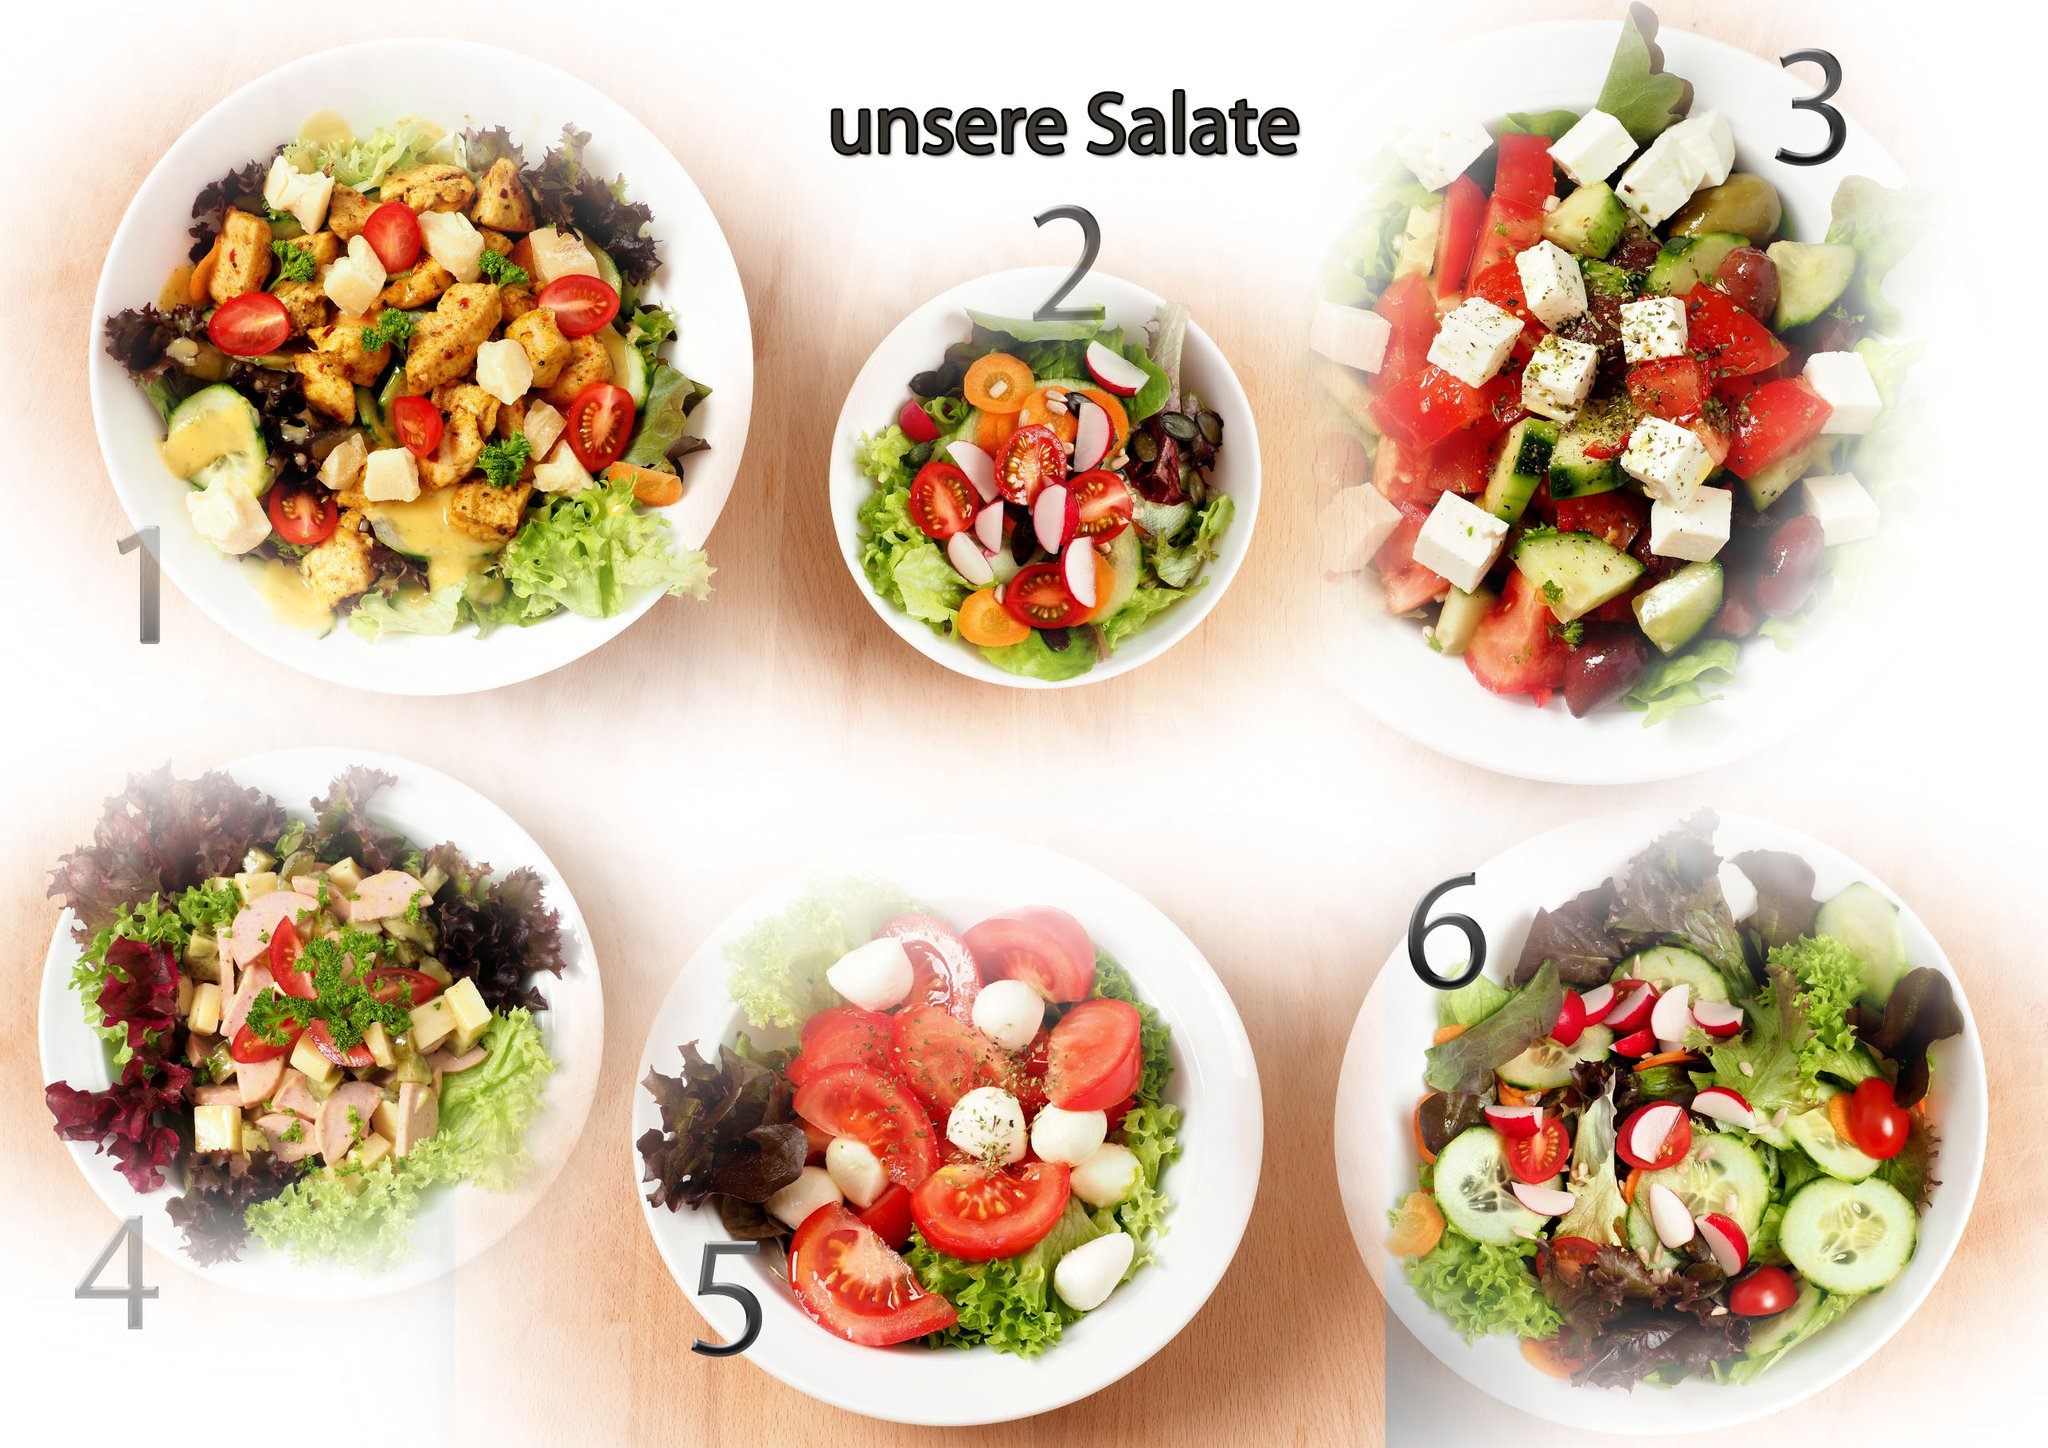 1 Badi-Poulet-Salat. 2 Kleiner grüner Salat. 3. Griechischer Salat. 4 Wurst-Käse-Salat. 5 Tomaten-Mozzarella-Salat. 6 Grosser grüner Salat